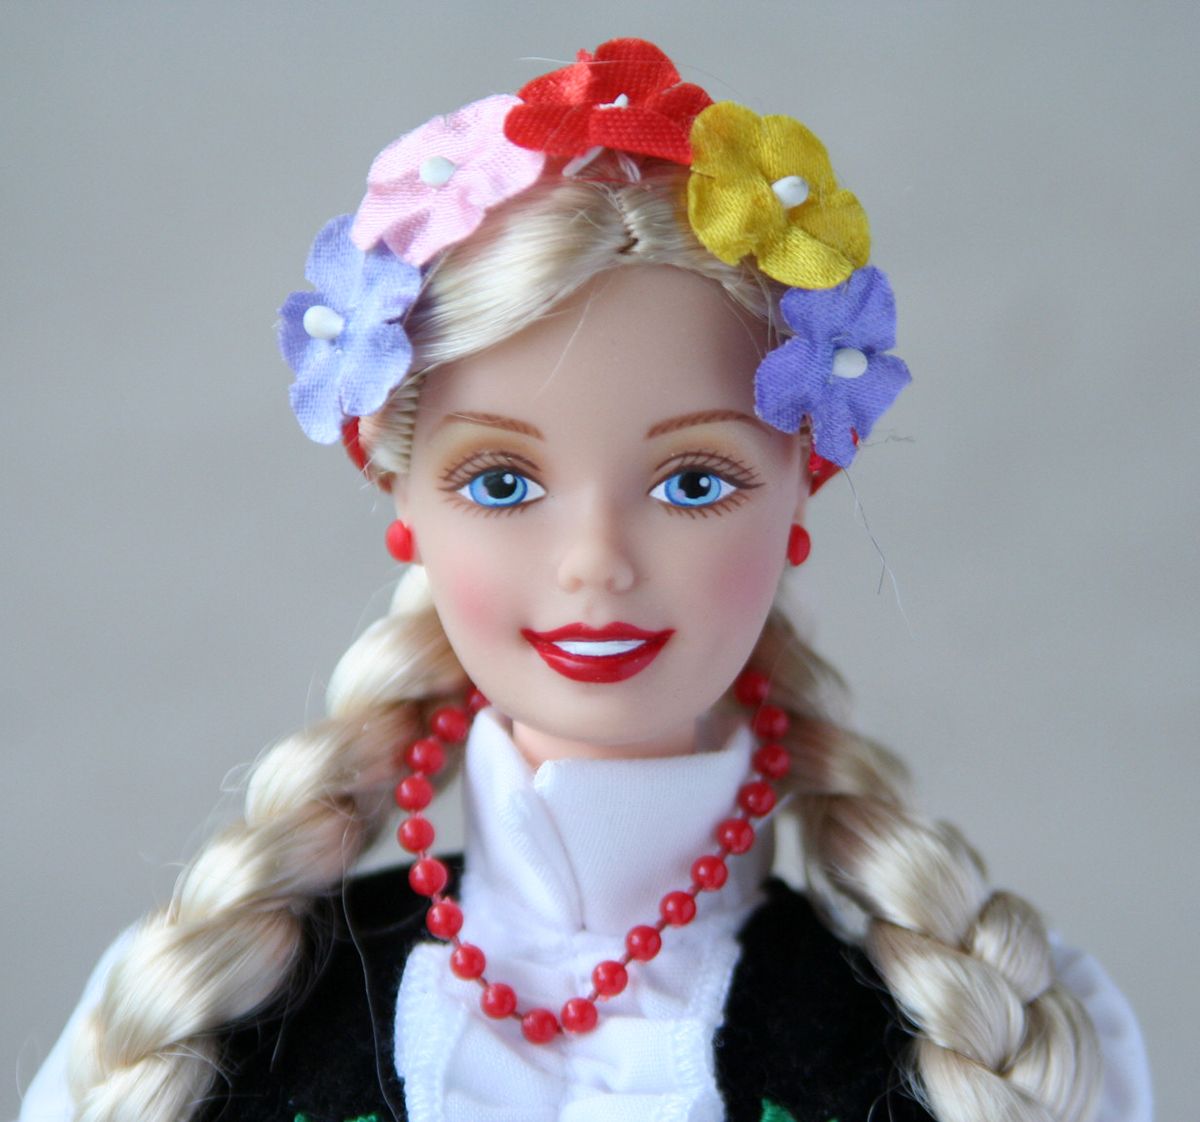 1998 Polish Barbie Doll. 